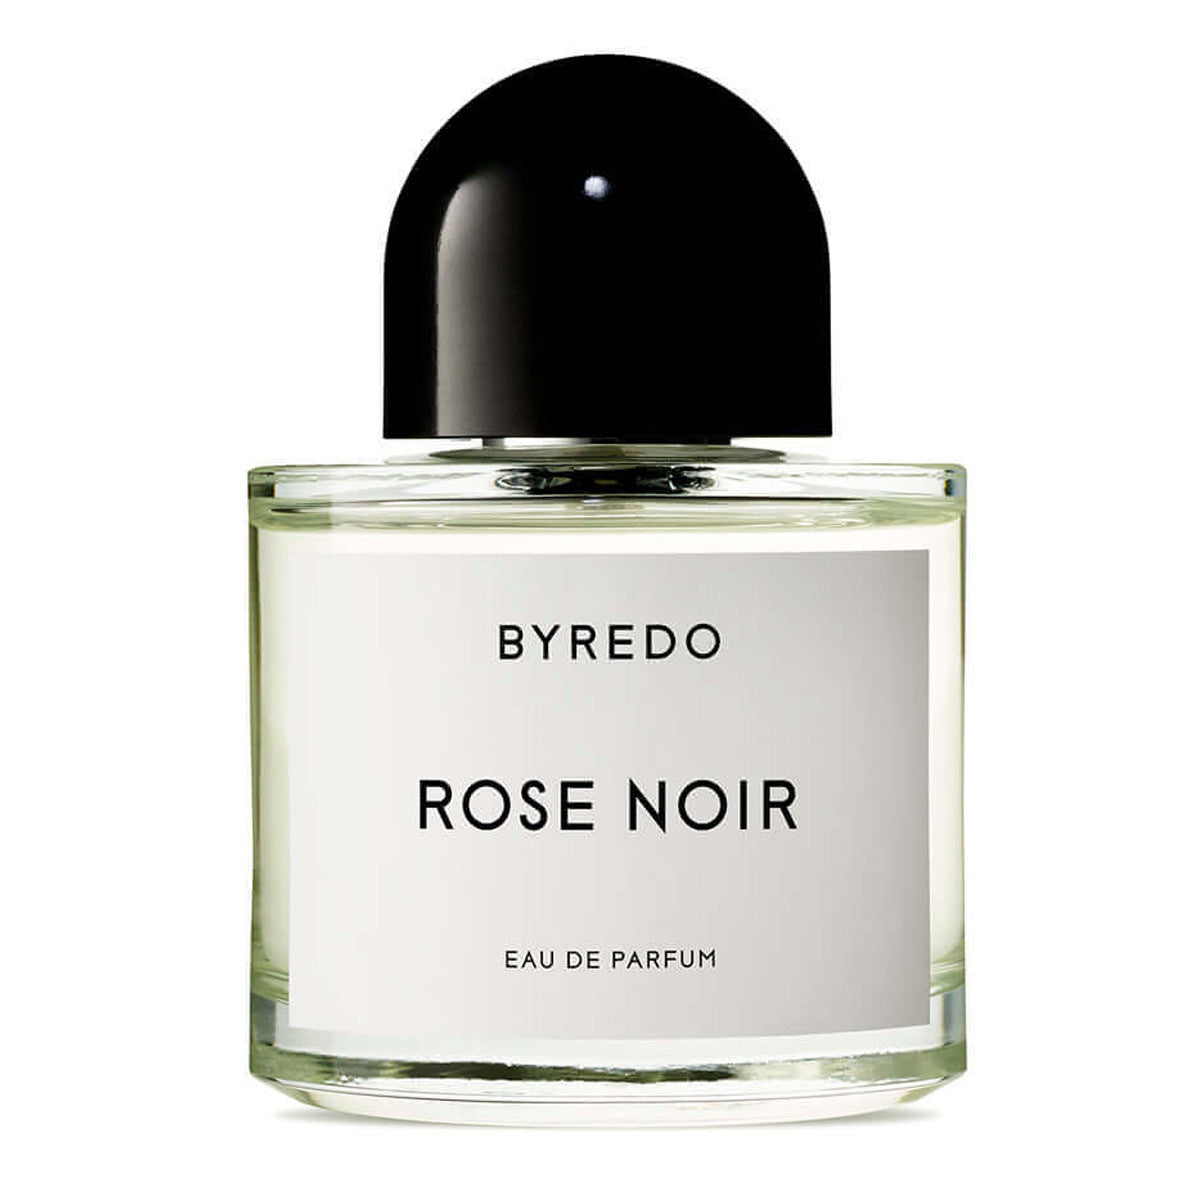 Primary image of Rose Noir Eau de Parfum